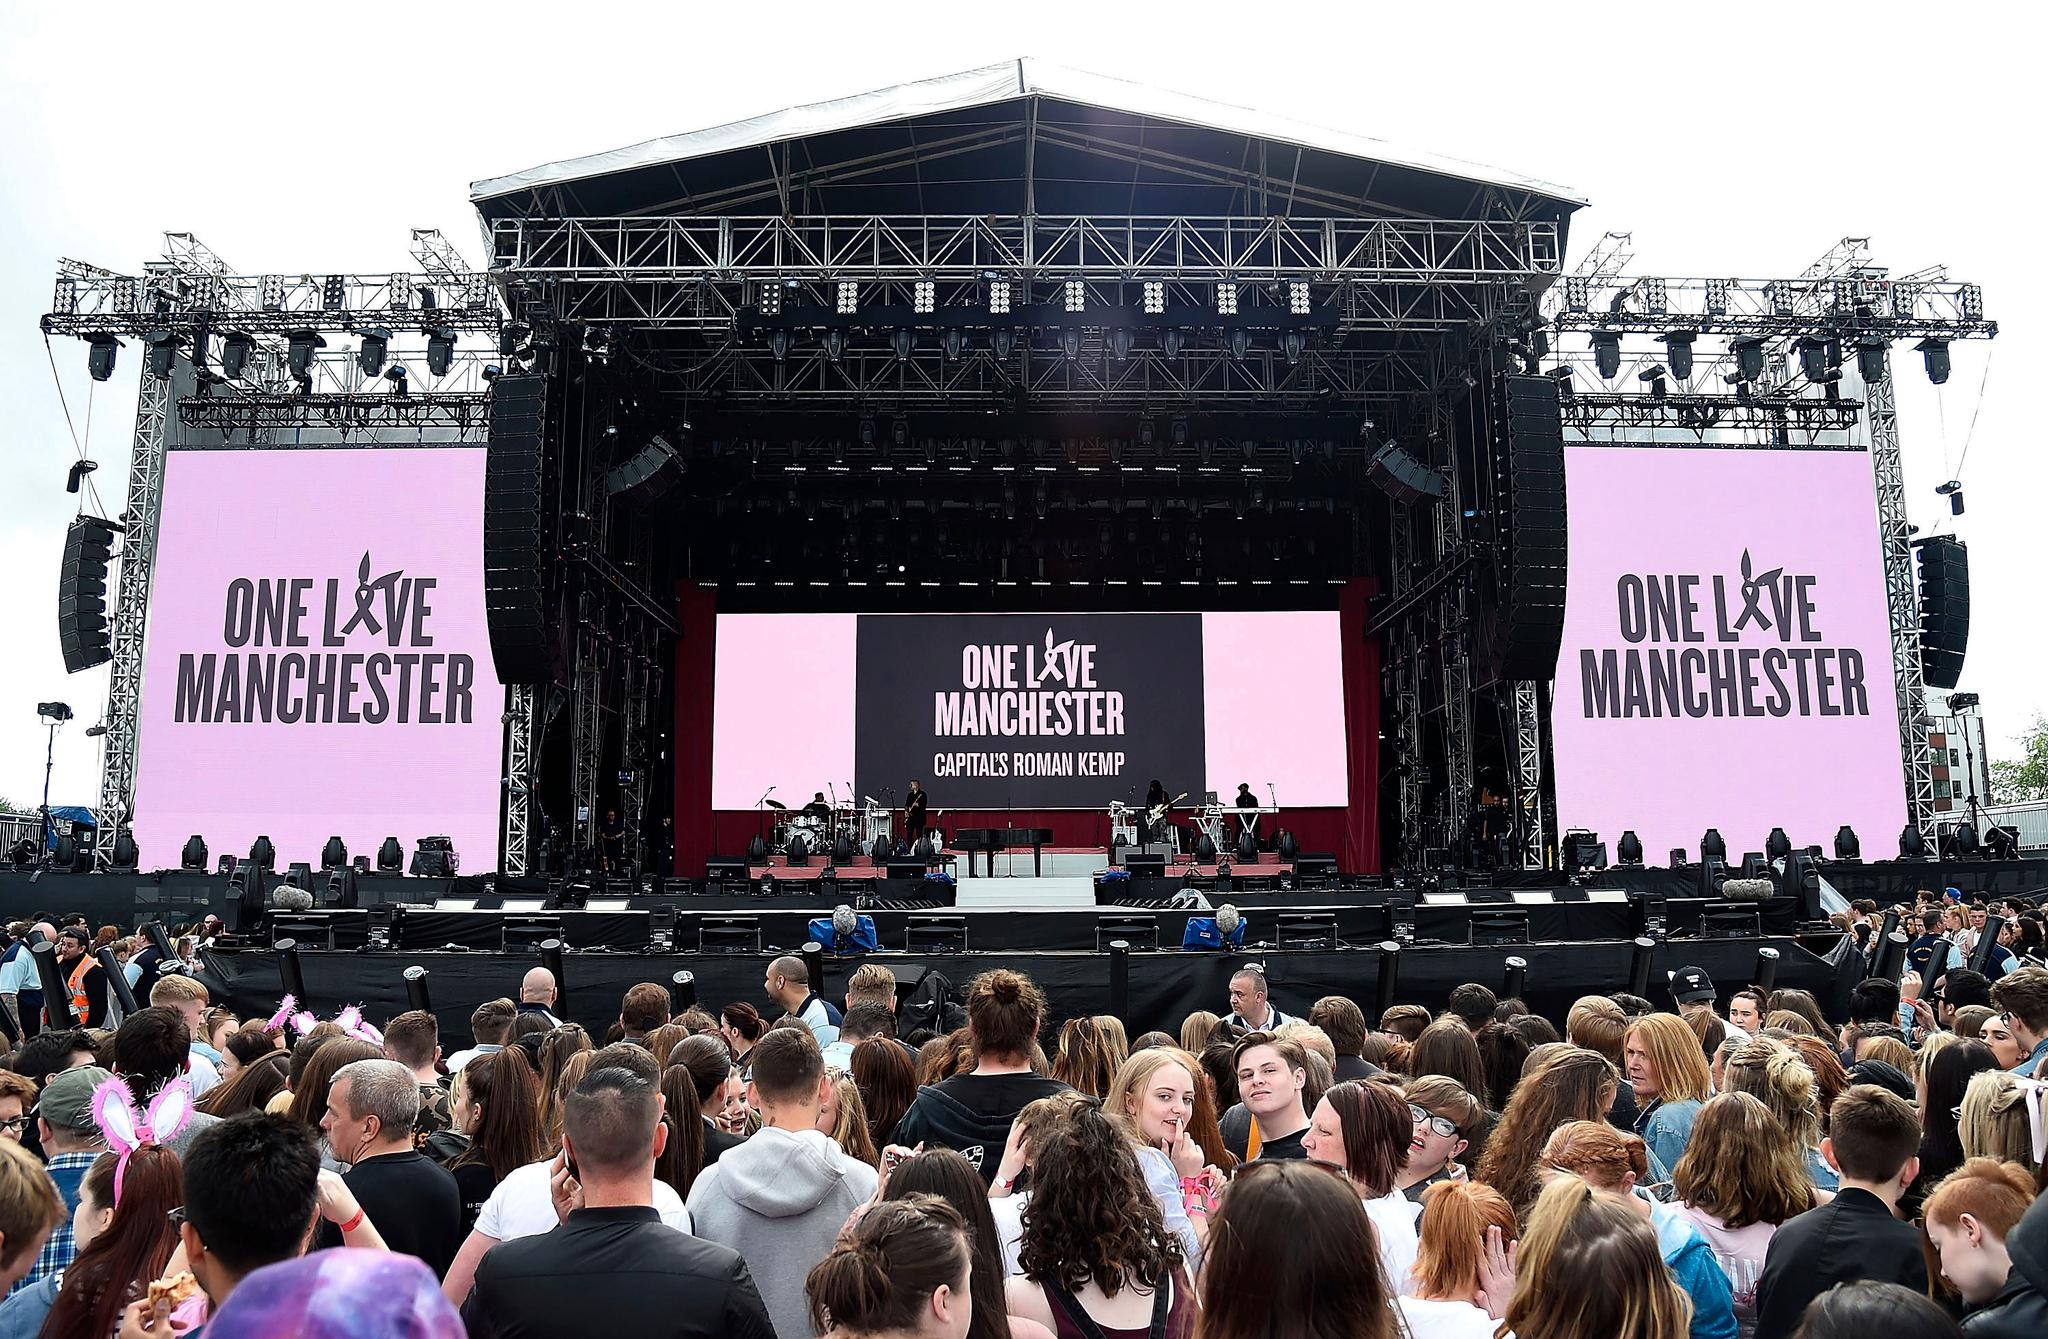 «One Love Manchester» er tittelen på minnekonserten som finner sted i Manchester søndag kveld. Konserten ble innledet med ett minutts stillhet.